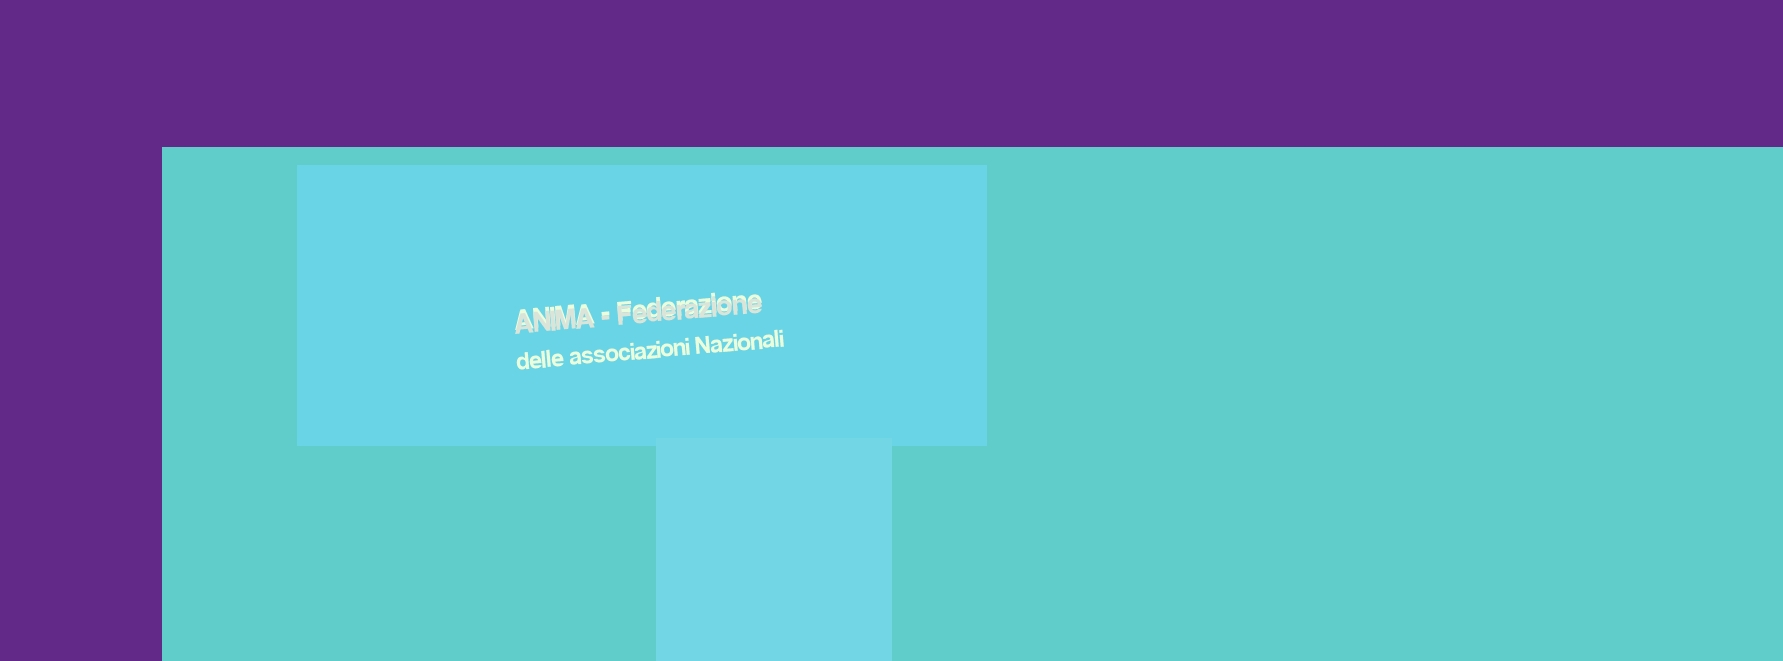 logo ANIMA - Federazione delle associazioni Nazionali